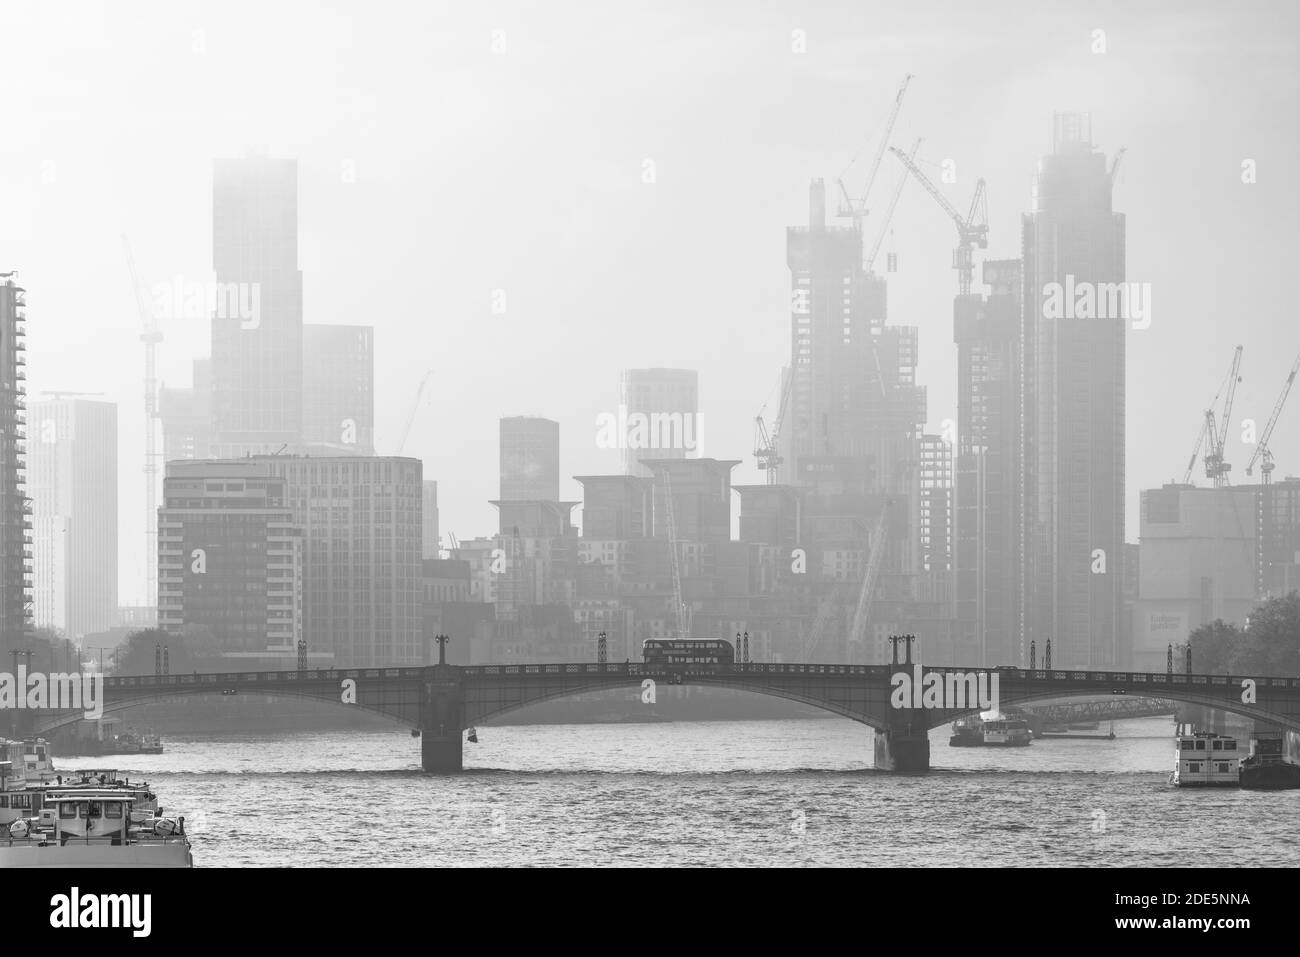 Città d'atmosfera bianca e nera in un clima nebbioso con Central London City Skyline, iconico autobus rosso di Londra e grattacieli, girato nel Lockdown Coronavirus Covid-19 in Inghilterra, Regno Unito Foto Stock